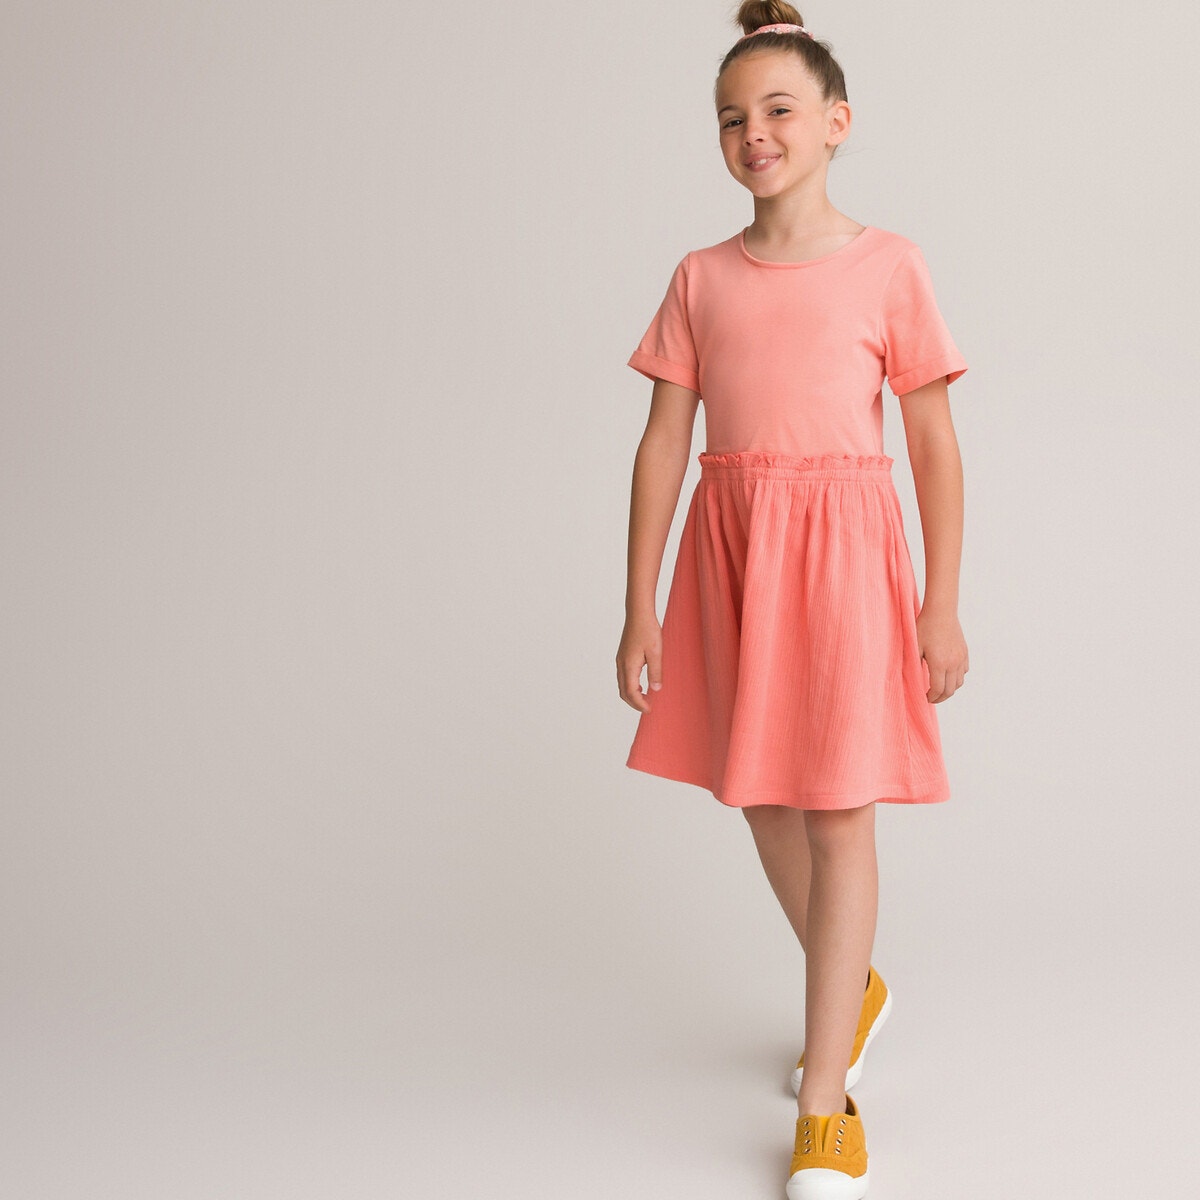 Κοντομάνικο φόρεμα με εντυπωσιακή πλάτη, 3-12 ετών